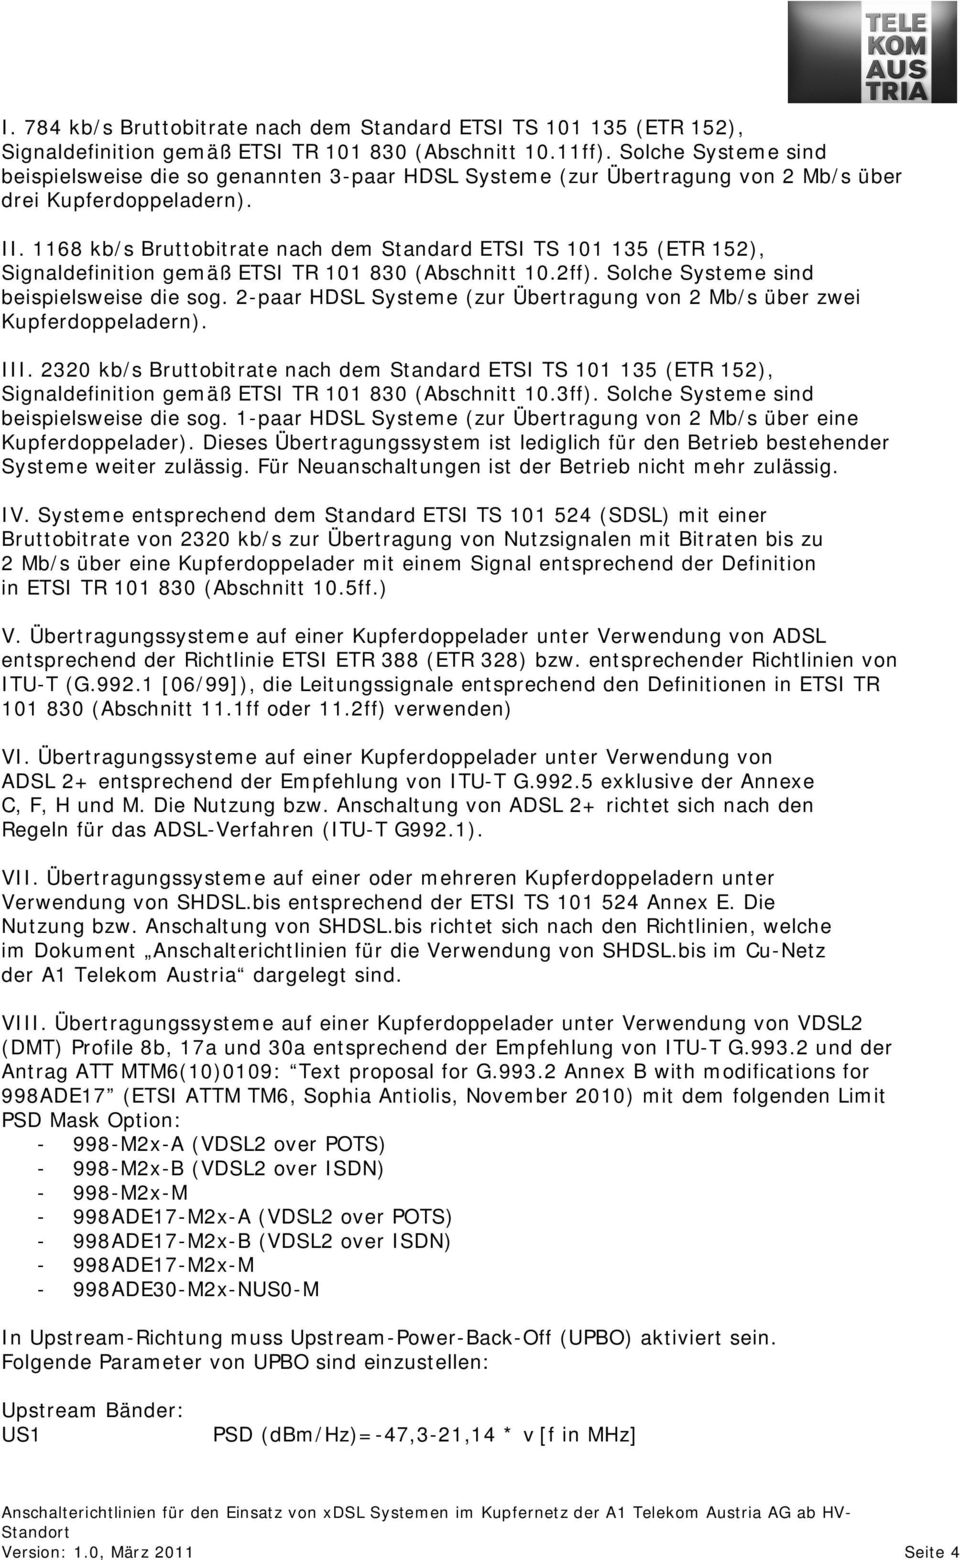 1168 kb/s Bruttobitrate nach dem Standard ETSI TS 101 135 (ETR 152), Signaldefinition gemäß ETSI TR 101 830 (Abschnitt 10.2ff). Solche Systeme sind beispielsweise die sog.